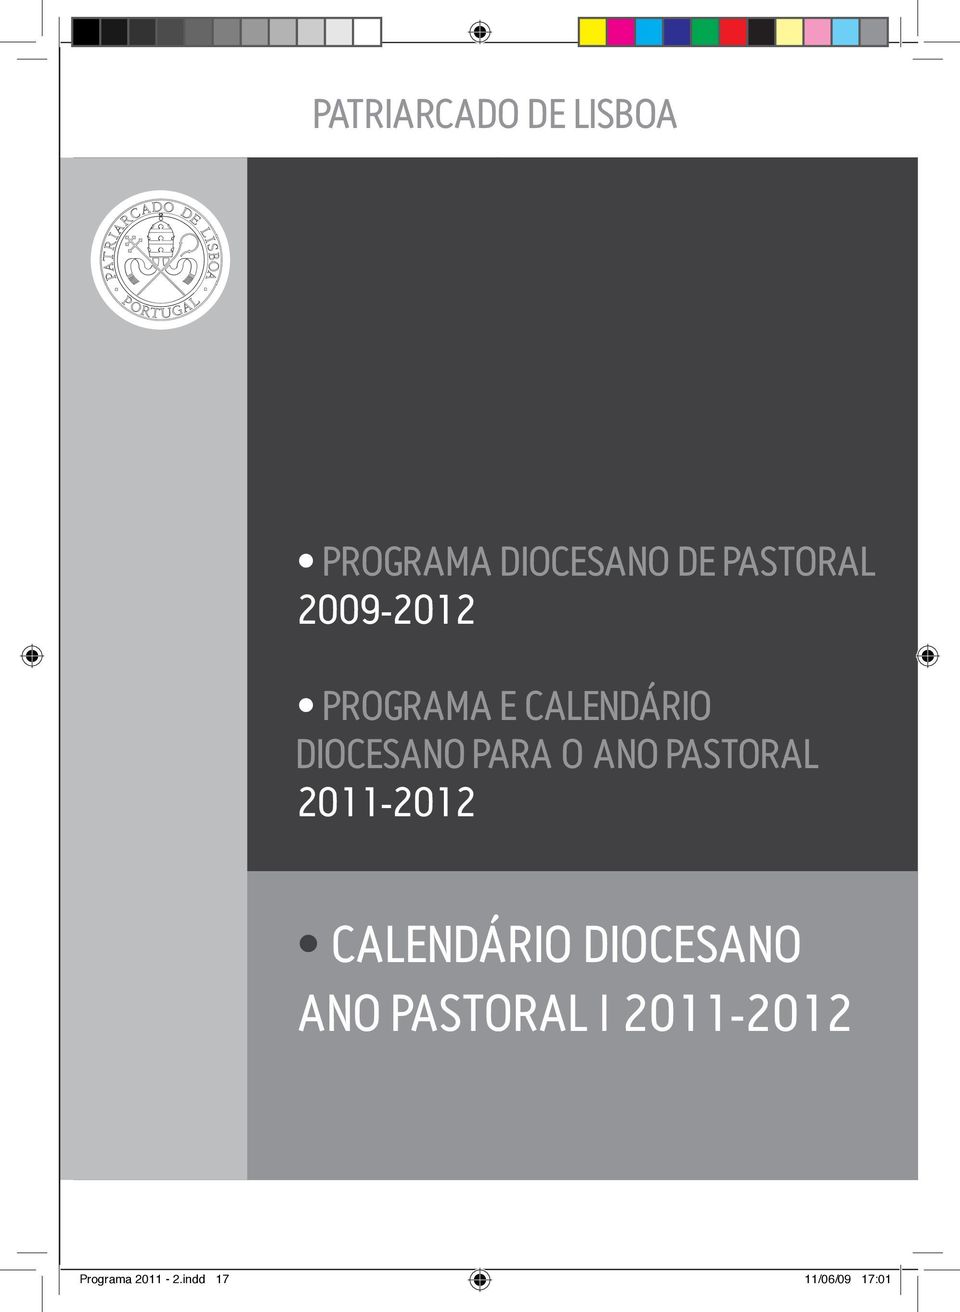 PARA O ANO PASTORAL 2011-2012 CALENDÁRIO DIOCESANO